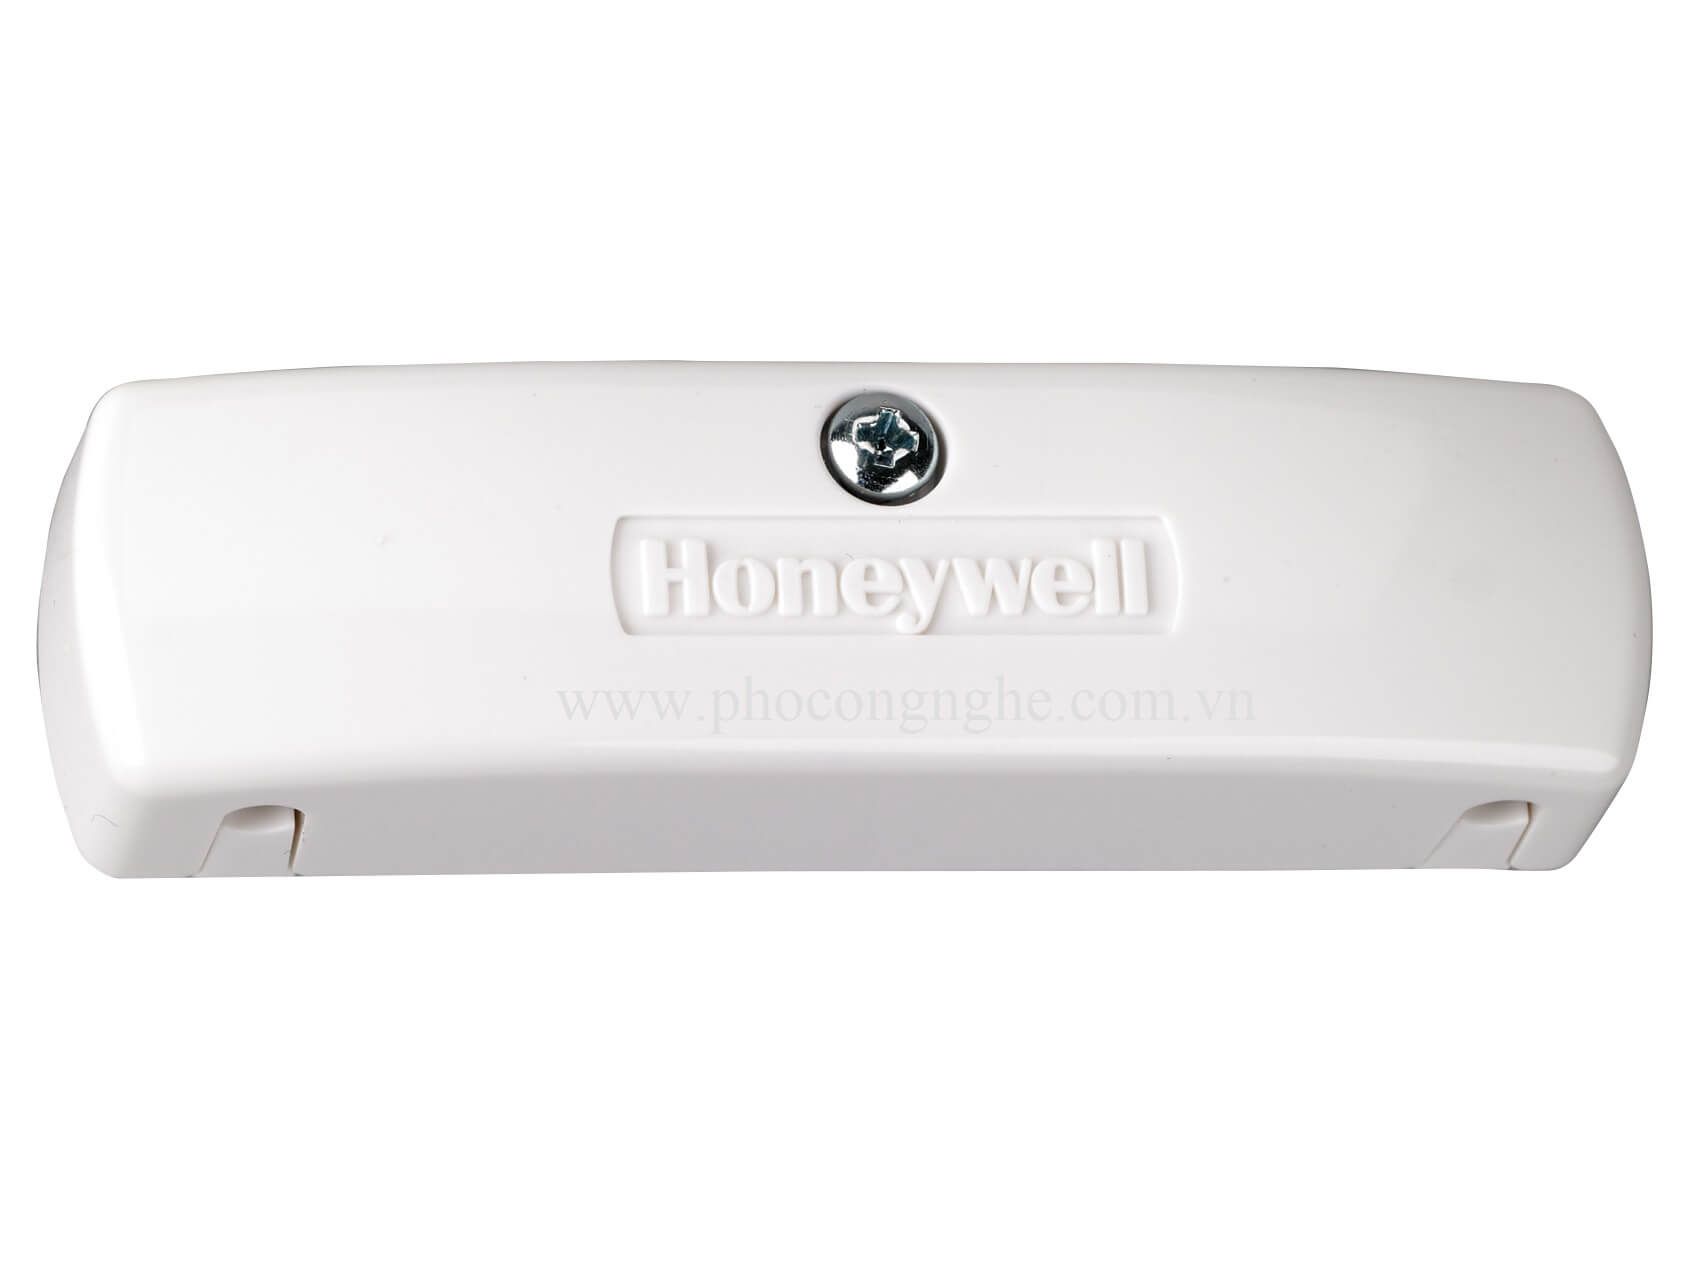 Đầu báo rung có dây Honeywell 11WH giúp bảo vệ trần nhà, tường, két sắt